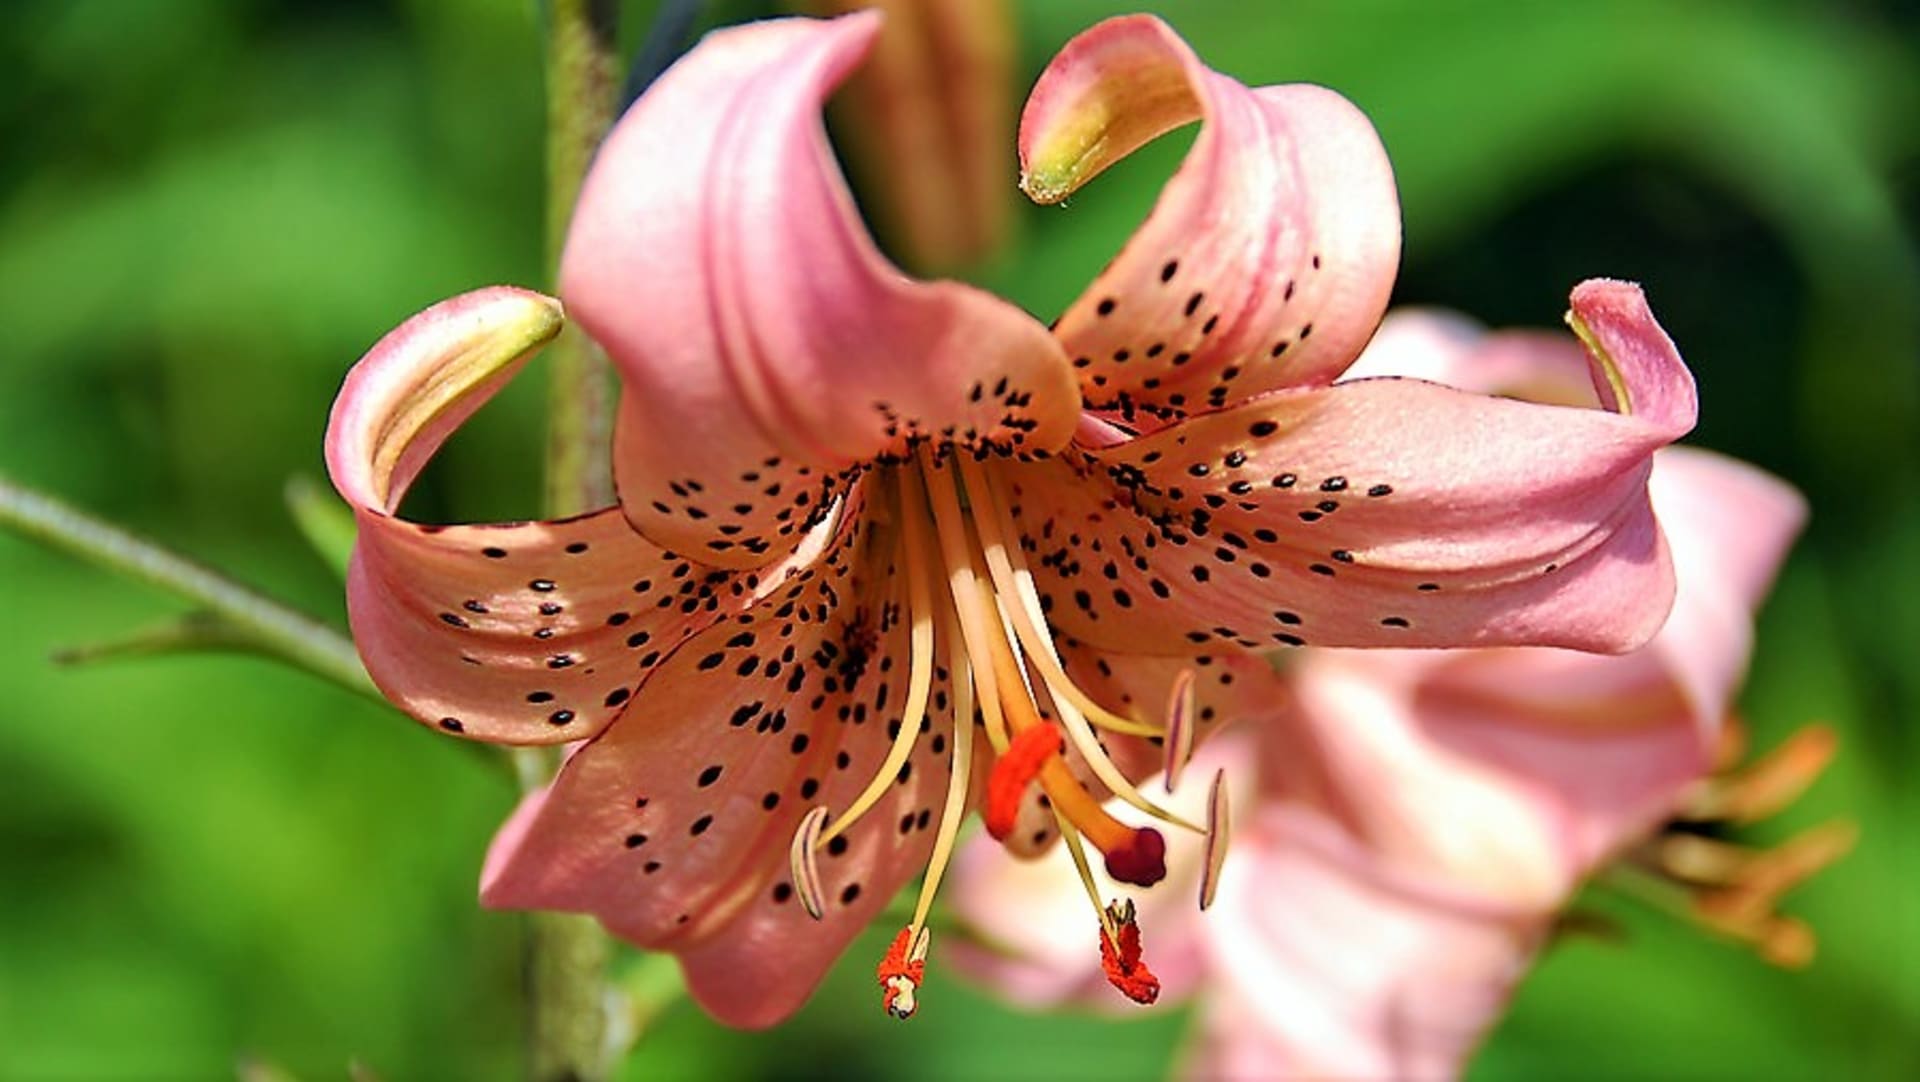 Turbanovité květy hybridní lilie druhu speciosum nádherně smyslně voní vanilkou. Na snímku kultivar Pink Giant.